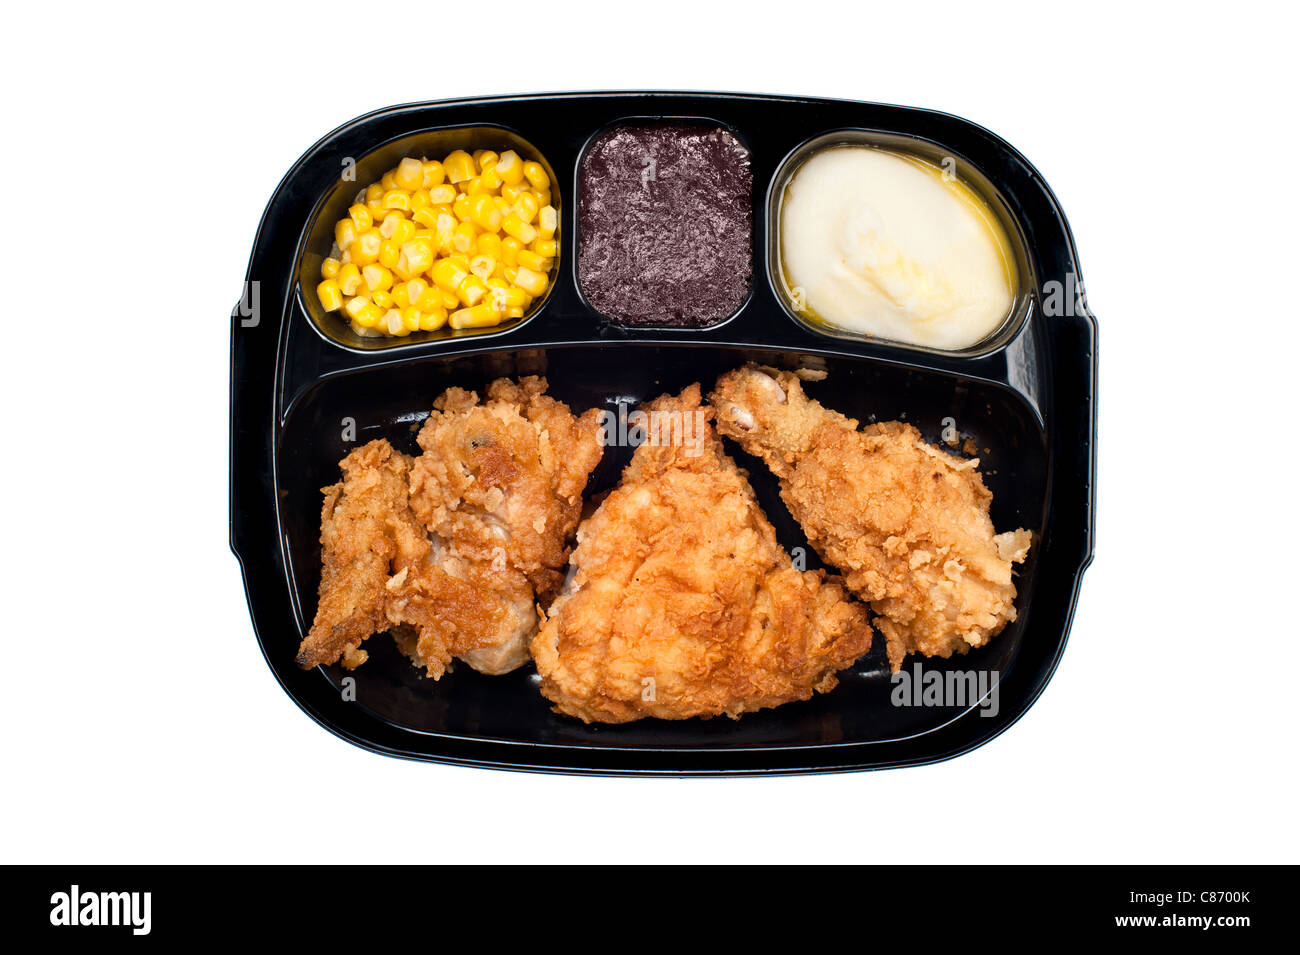 Un plat cuisiné le dîner de poulet frit, maïs, purée de pommes de terre et dessert dans un bac en plastique noir Banque D'Images